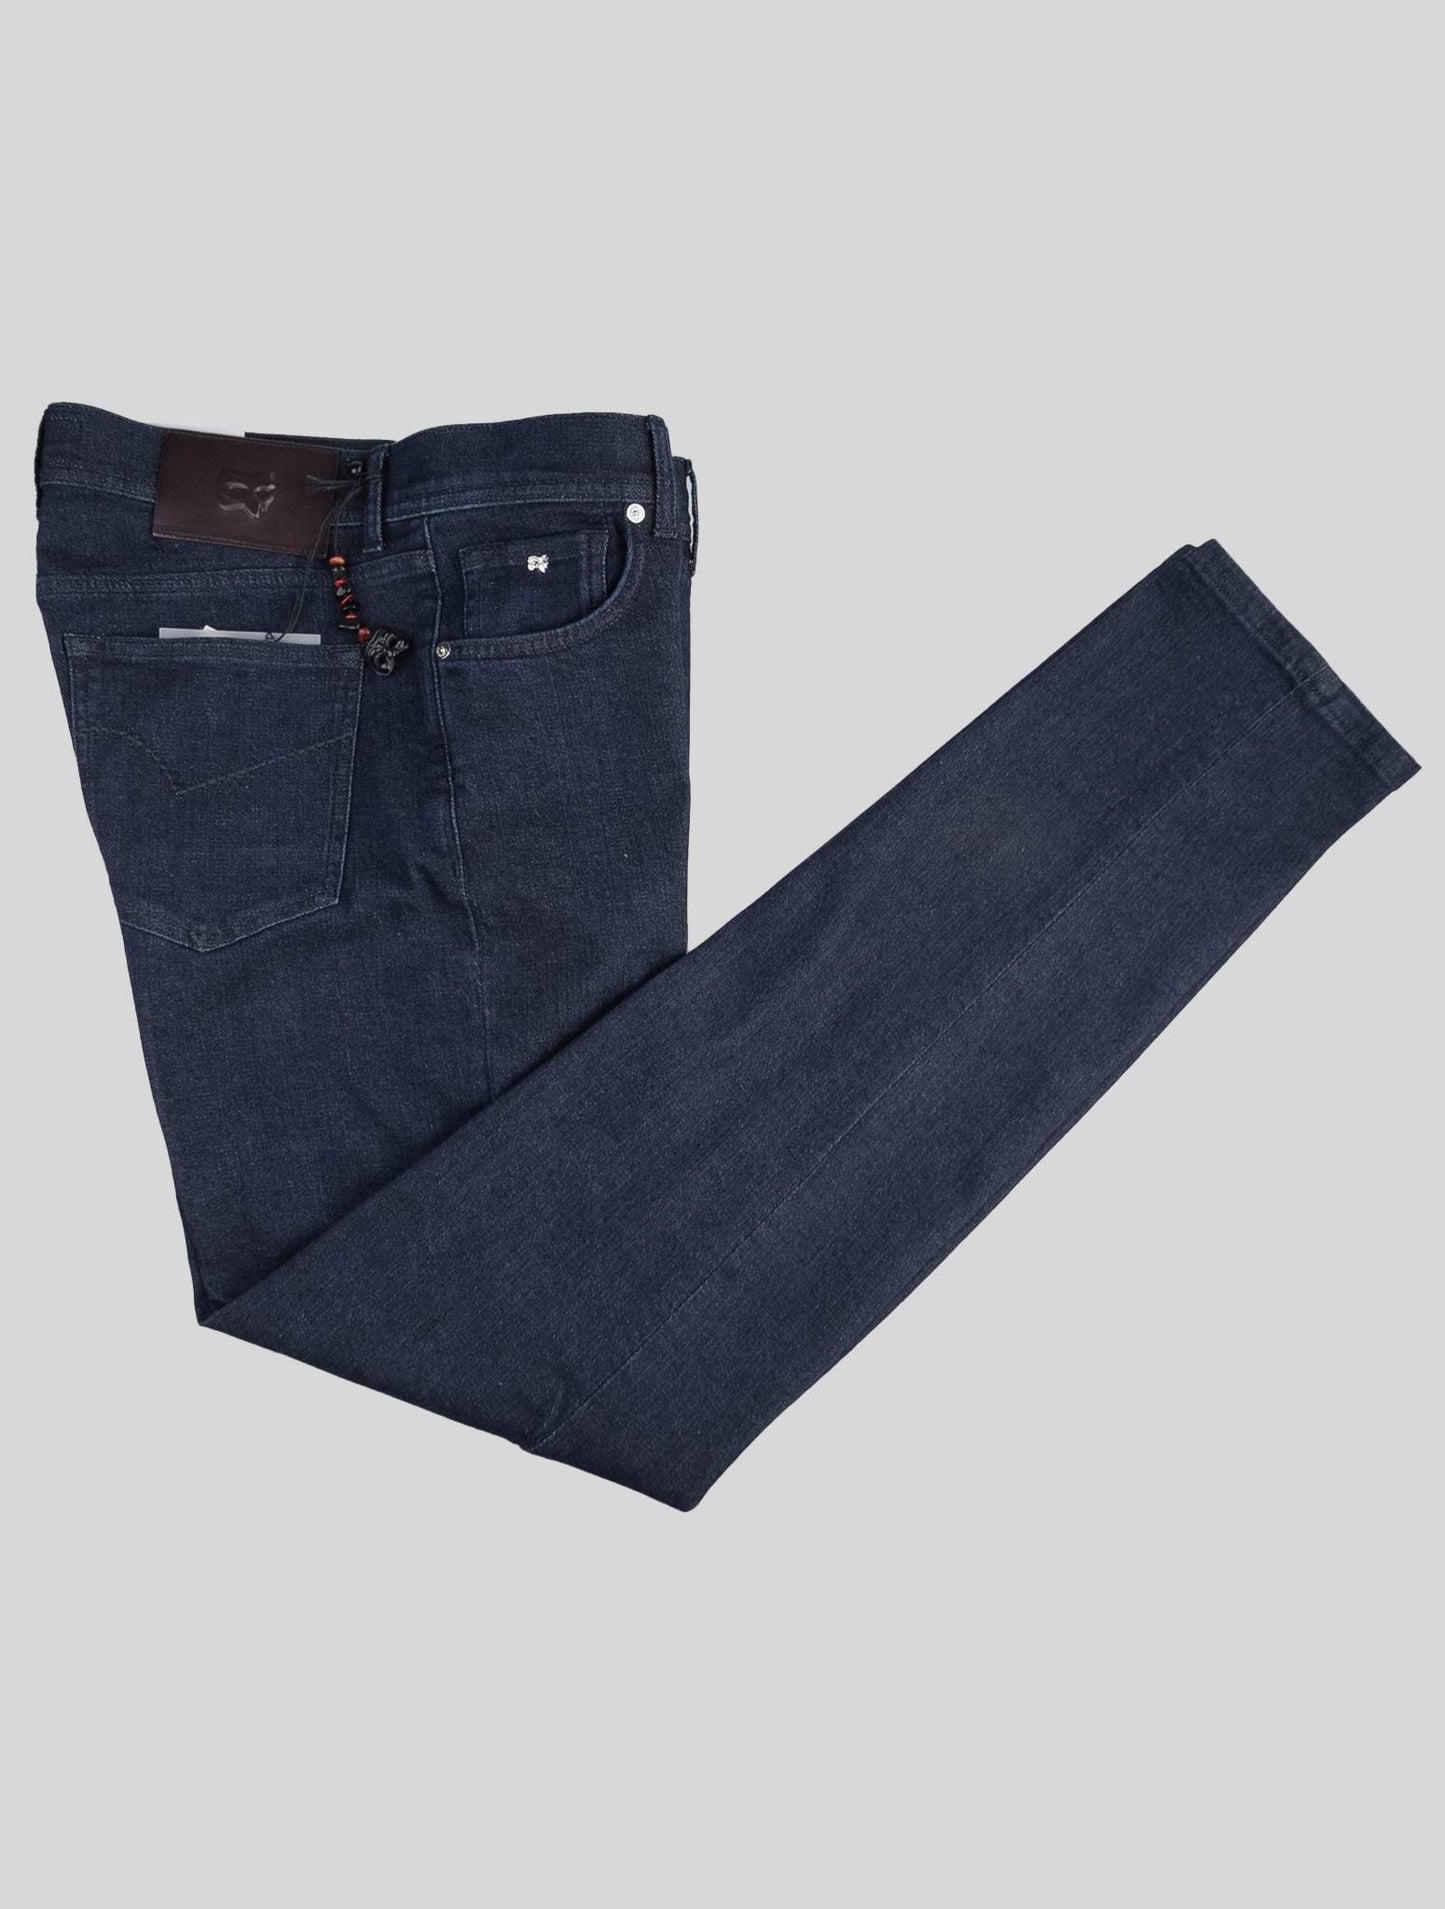 Marco Pescarolo Dark Blue Cotton Cashmere Ea Jeans